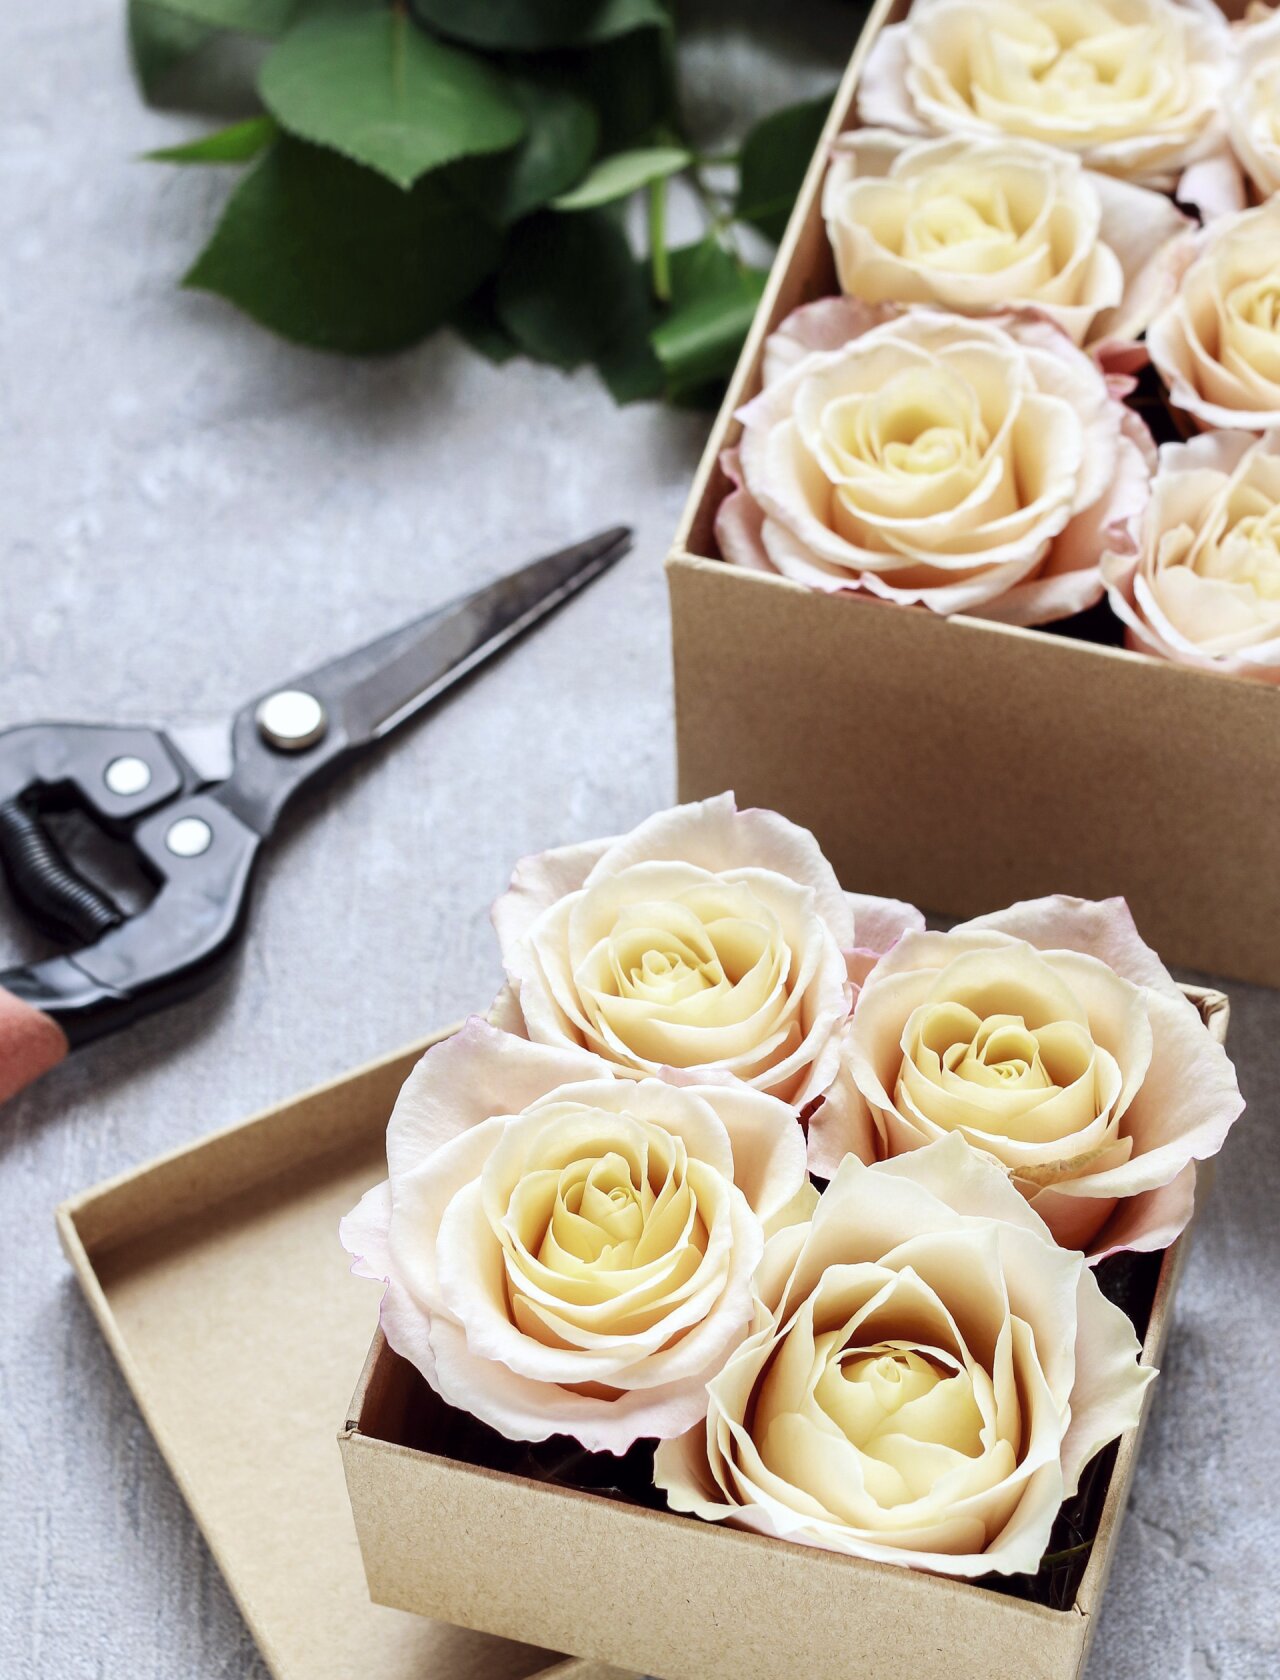 roser uten stilk plassert i små pappesker